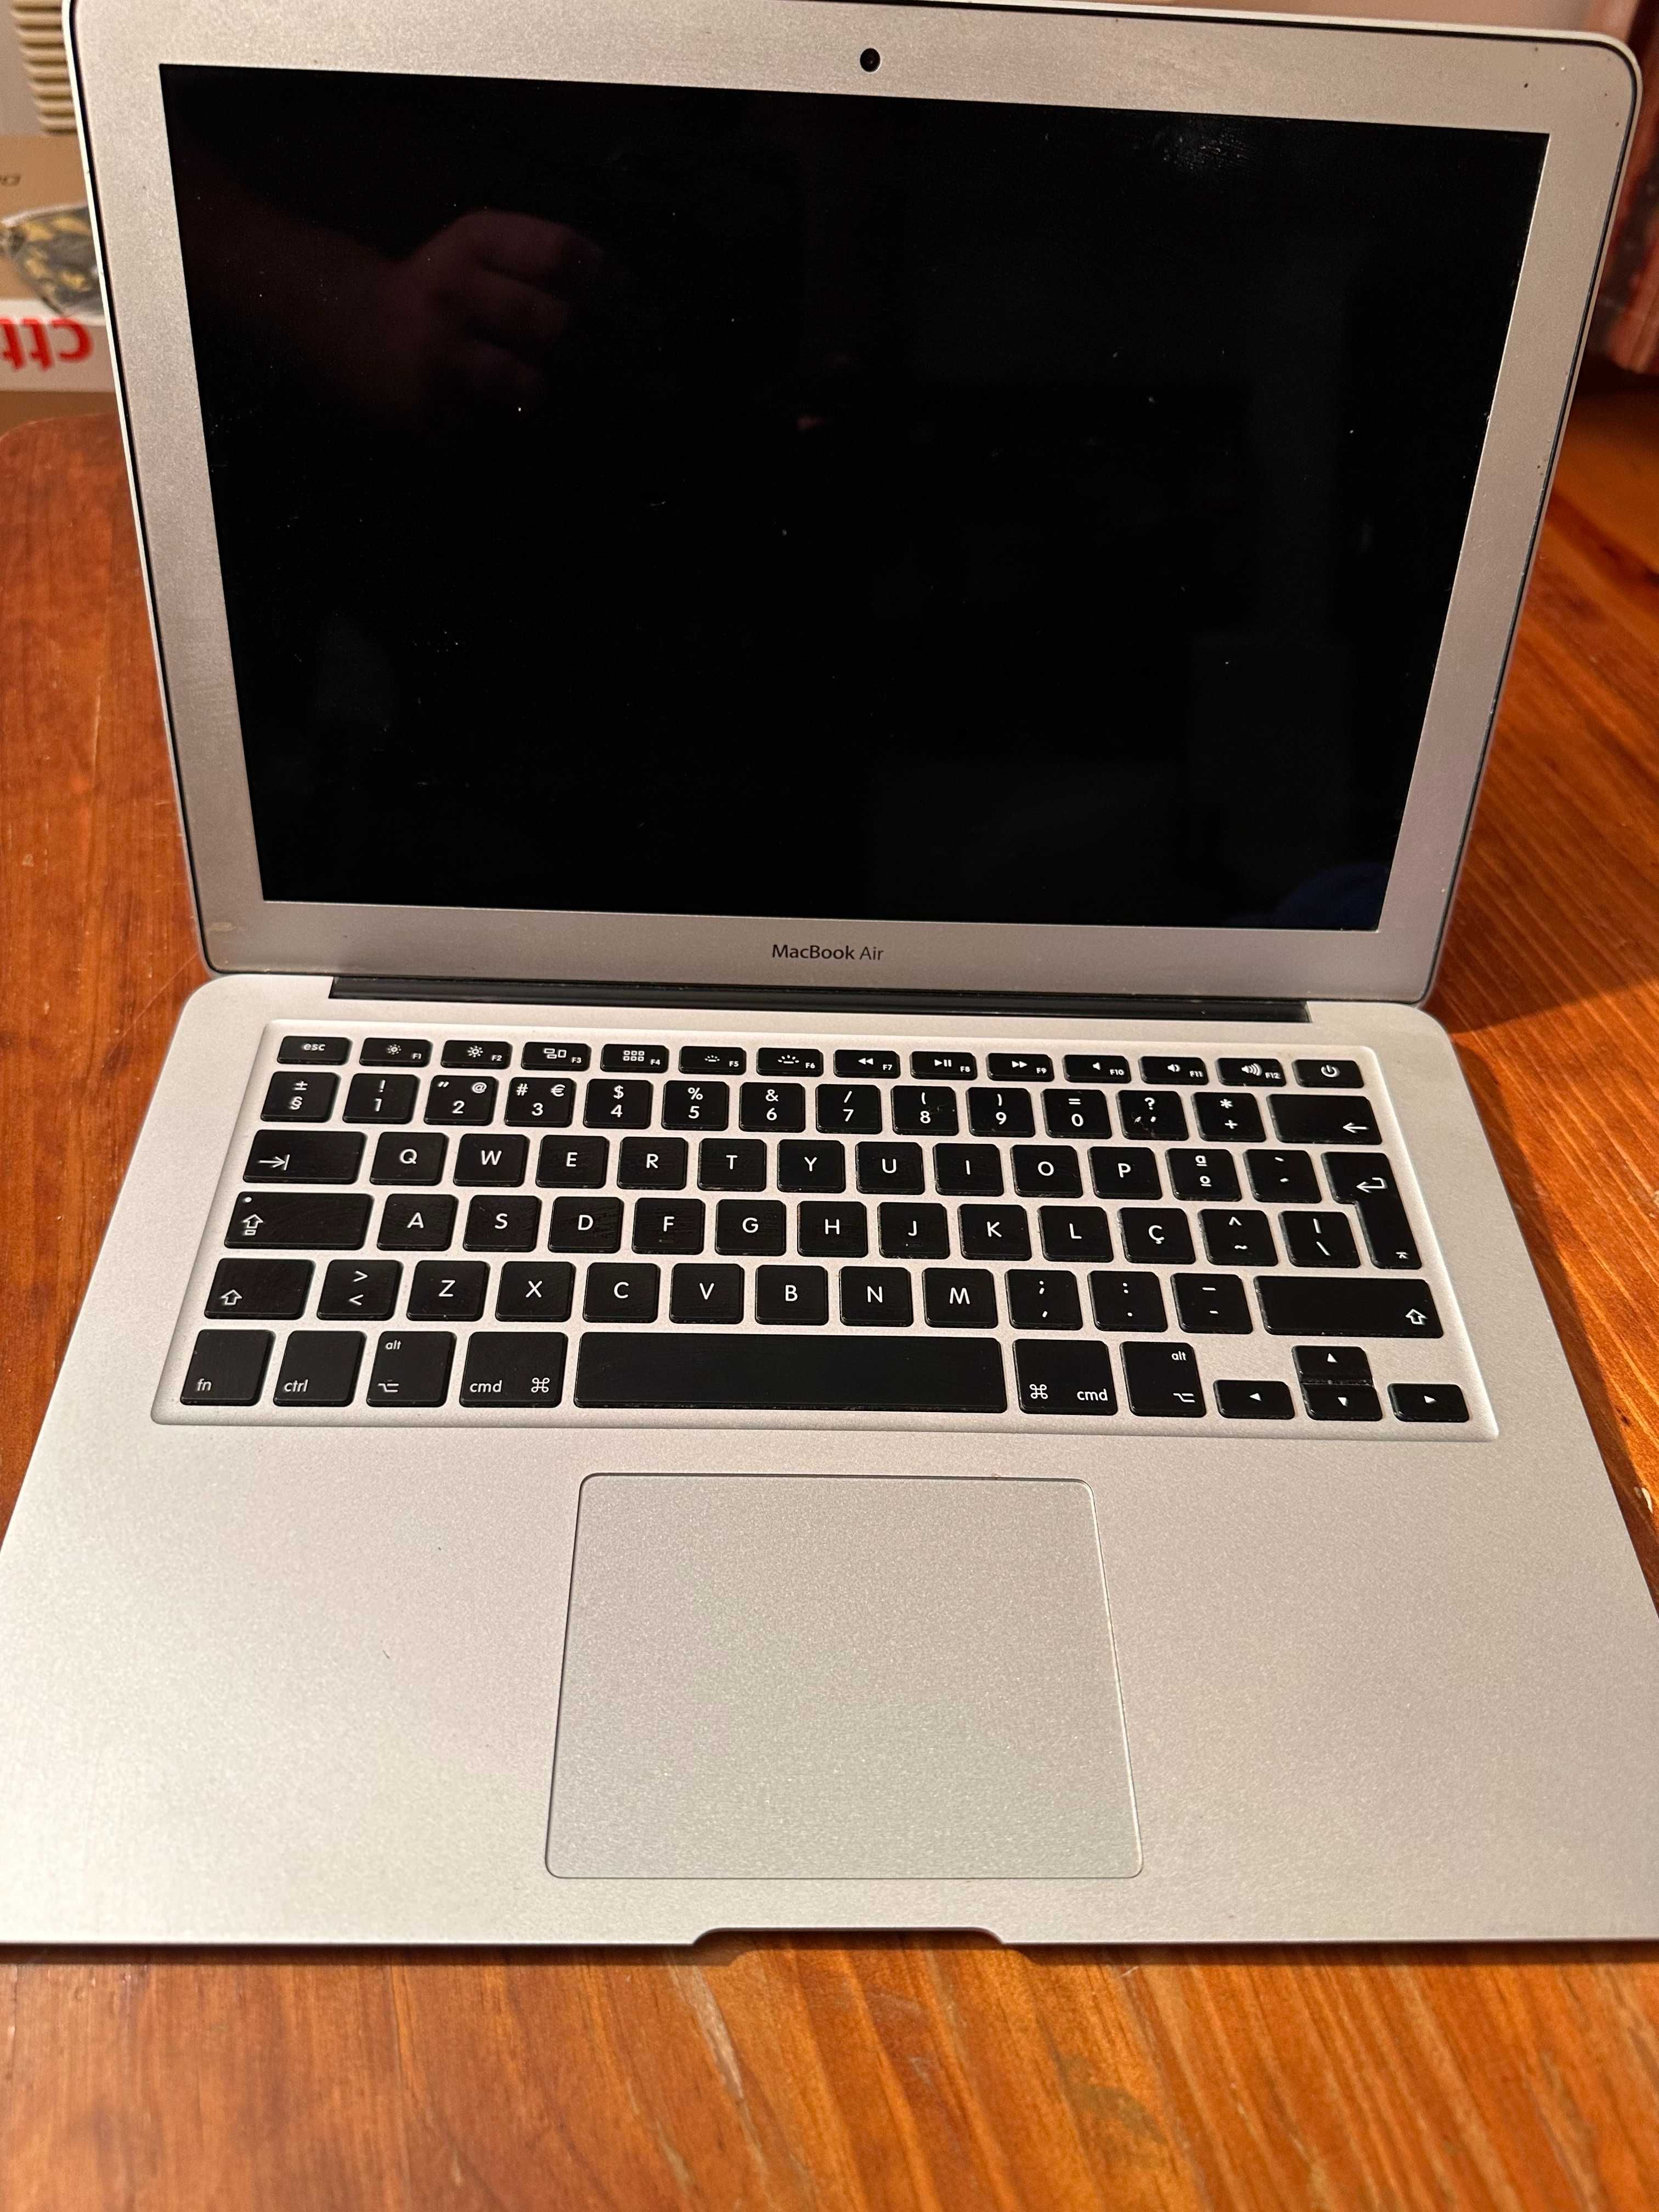 Portátil MacBook Air+Placa Refregiração+teclado+proteção pc +Rato+Mala